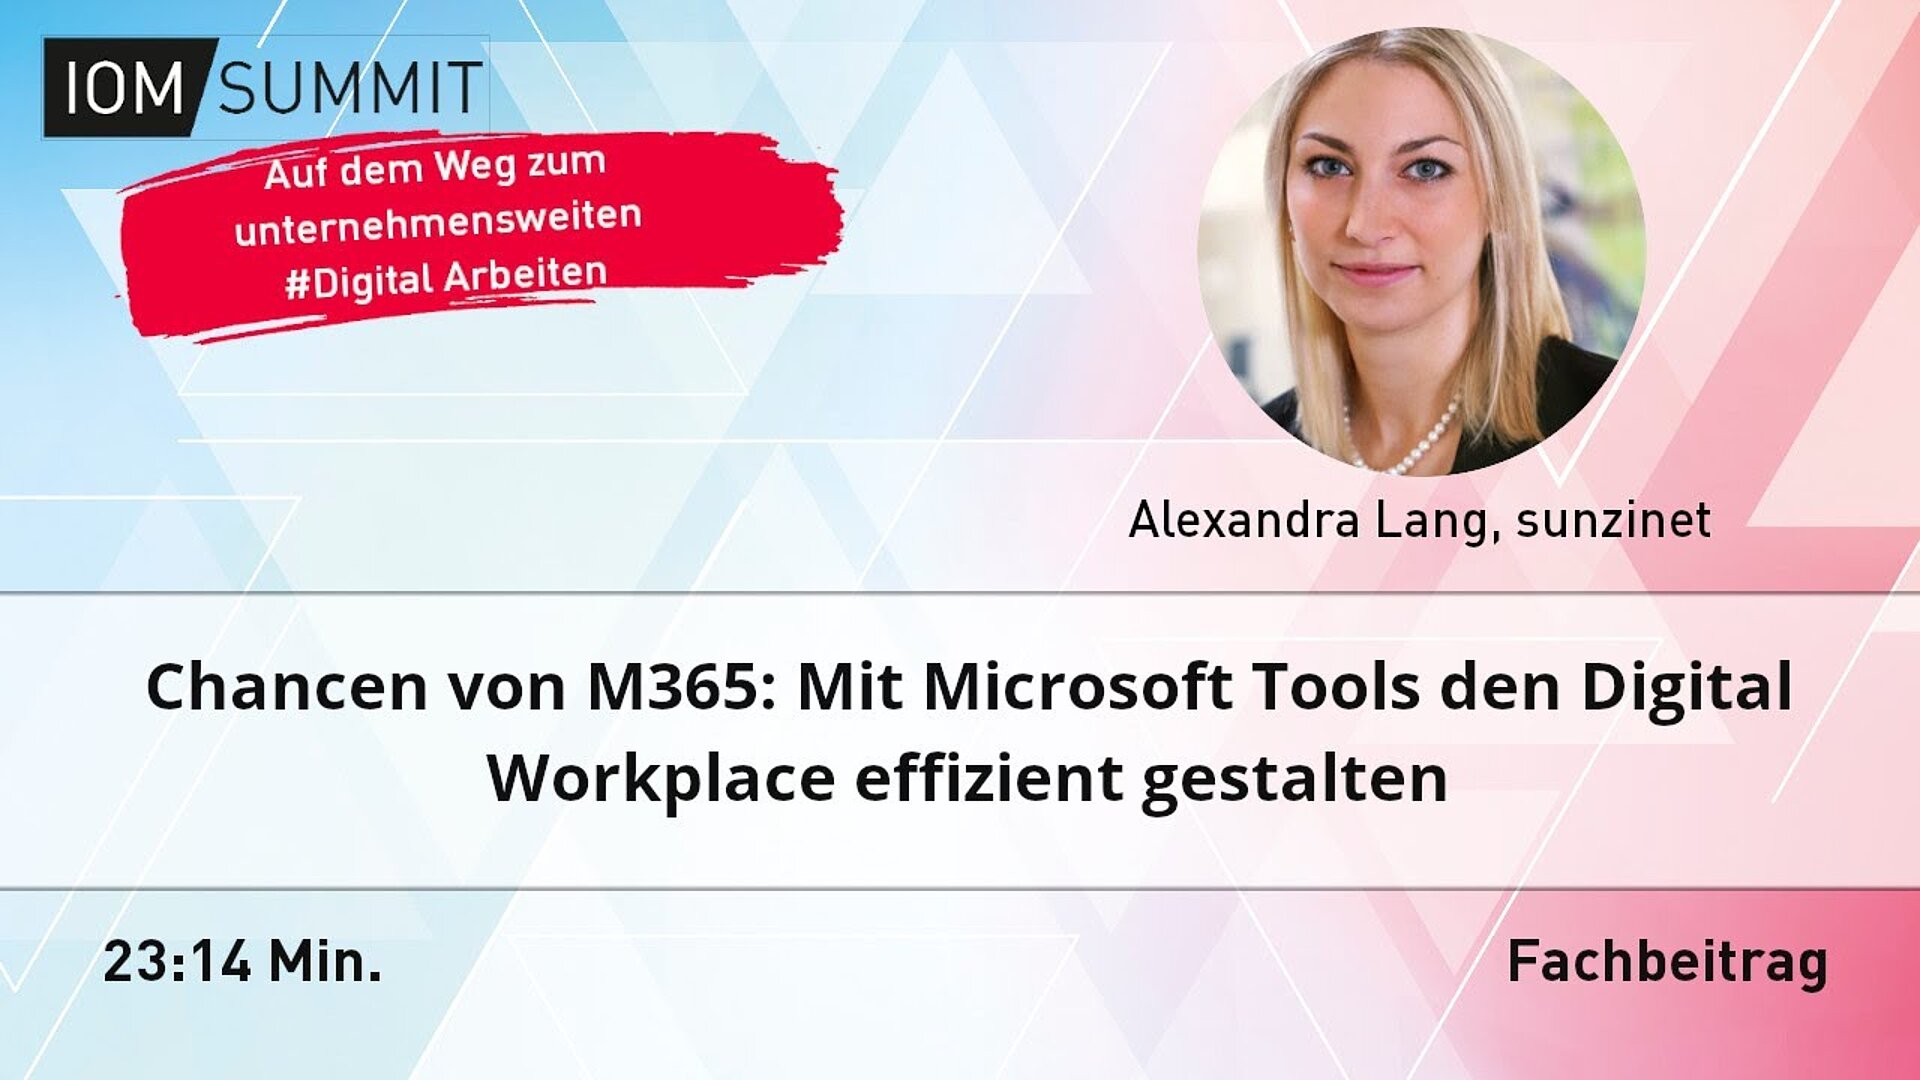 Fachbeitrag: Chancen von M365: Mit Microsoft Tools den Digital Workplace effizient gestalten